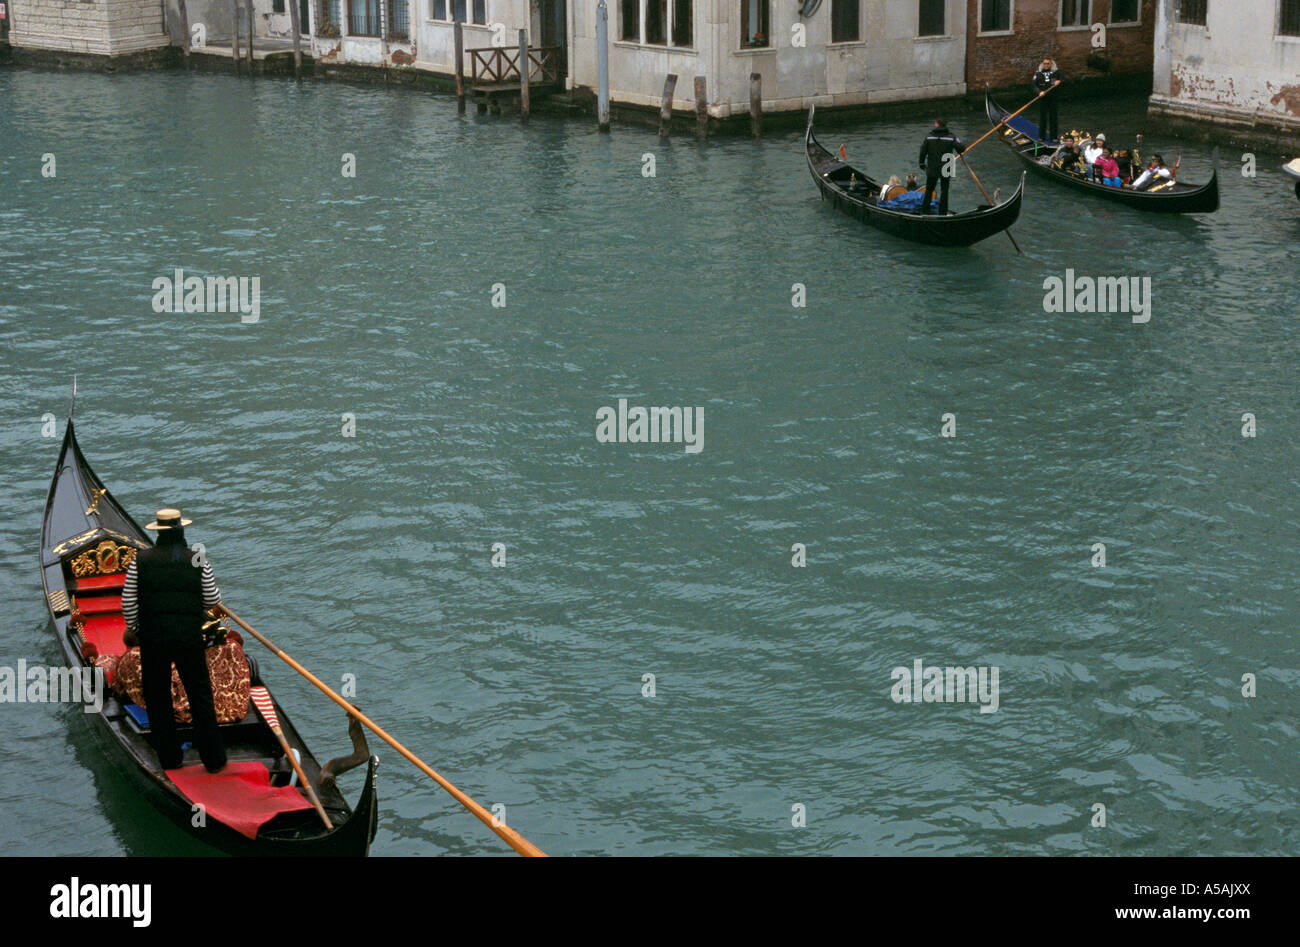 Vue d'un gondolier avec sa gondole sur un canal à Venise Italie Banque D'Images